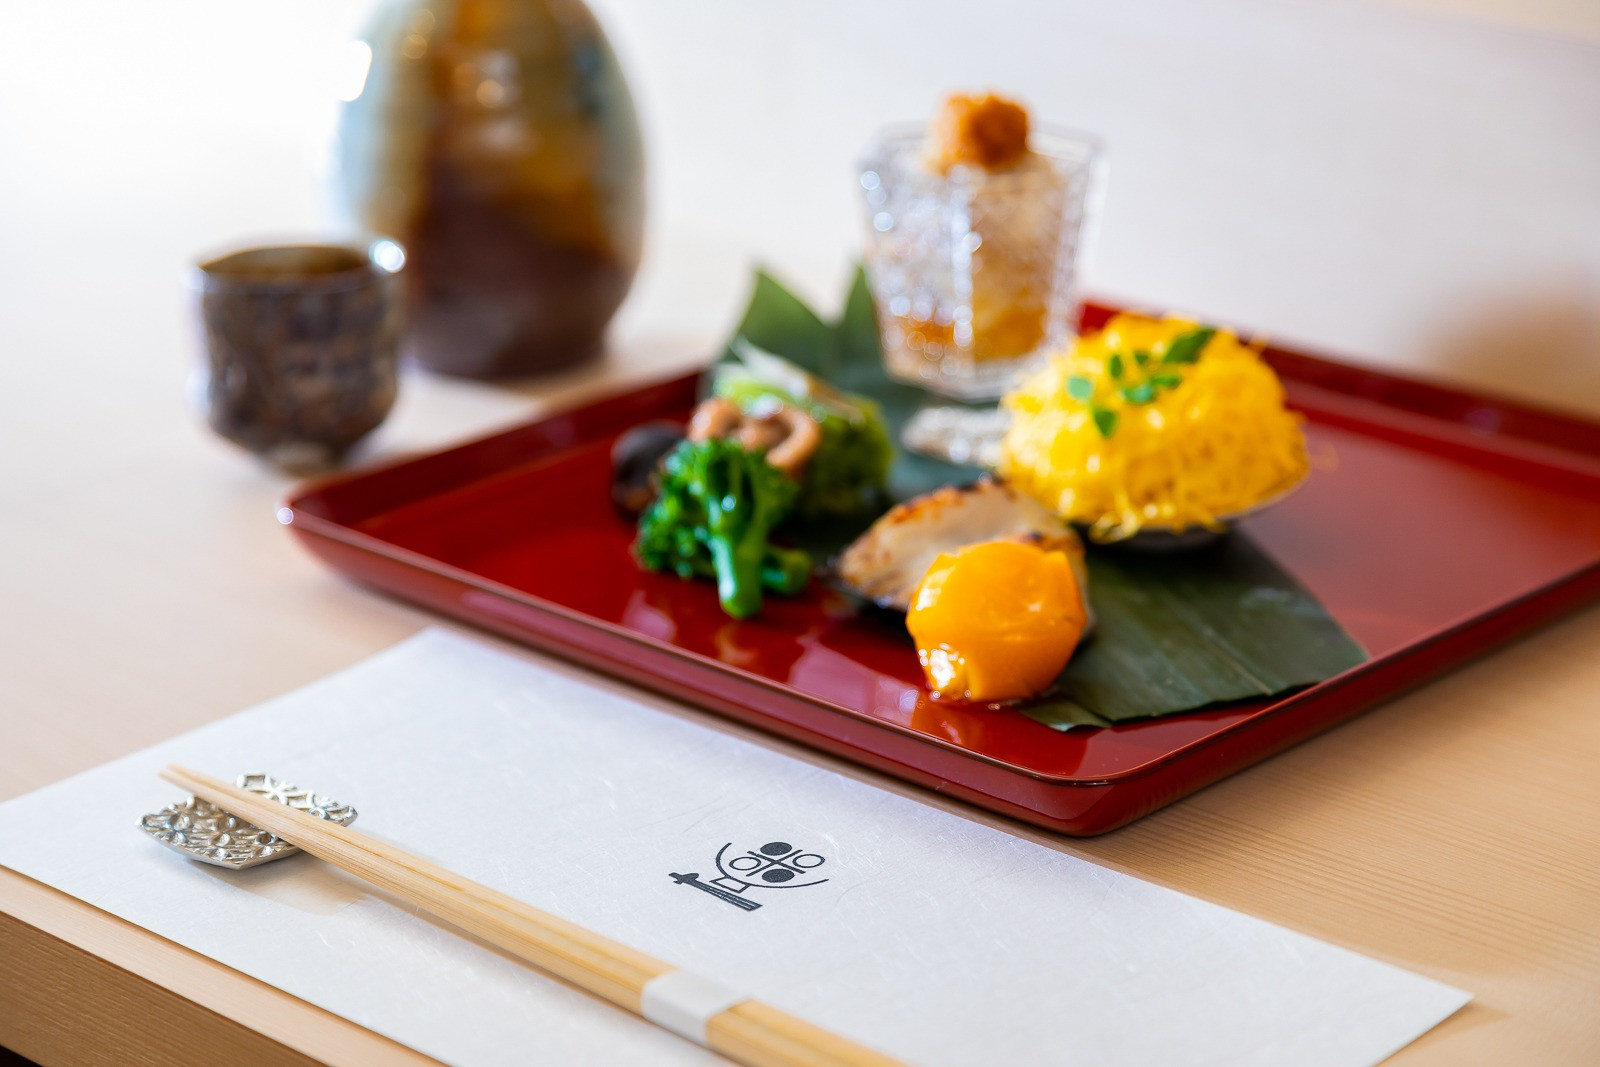 三田の和食料理店・おととごはん味保は地元のお客様に何度もご利用いただいています